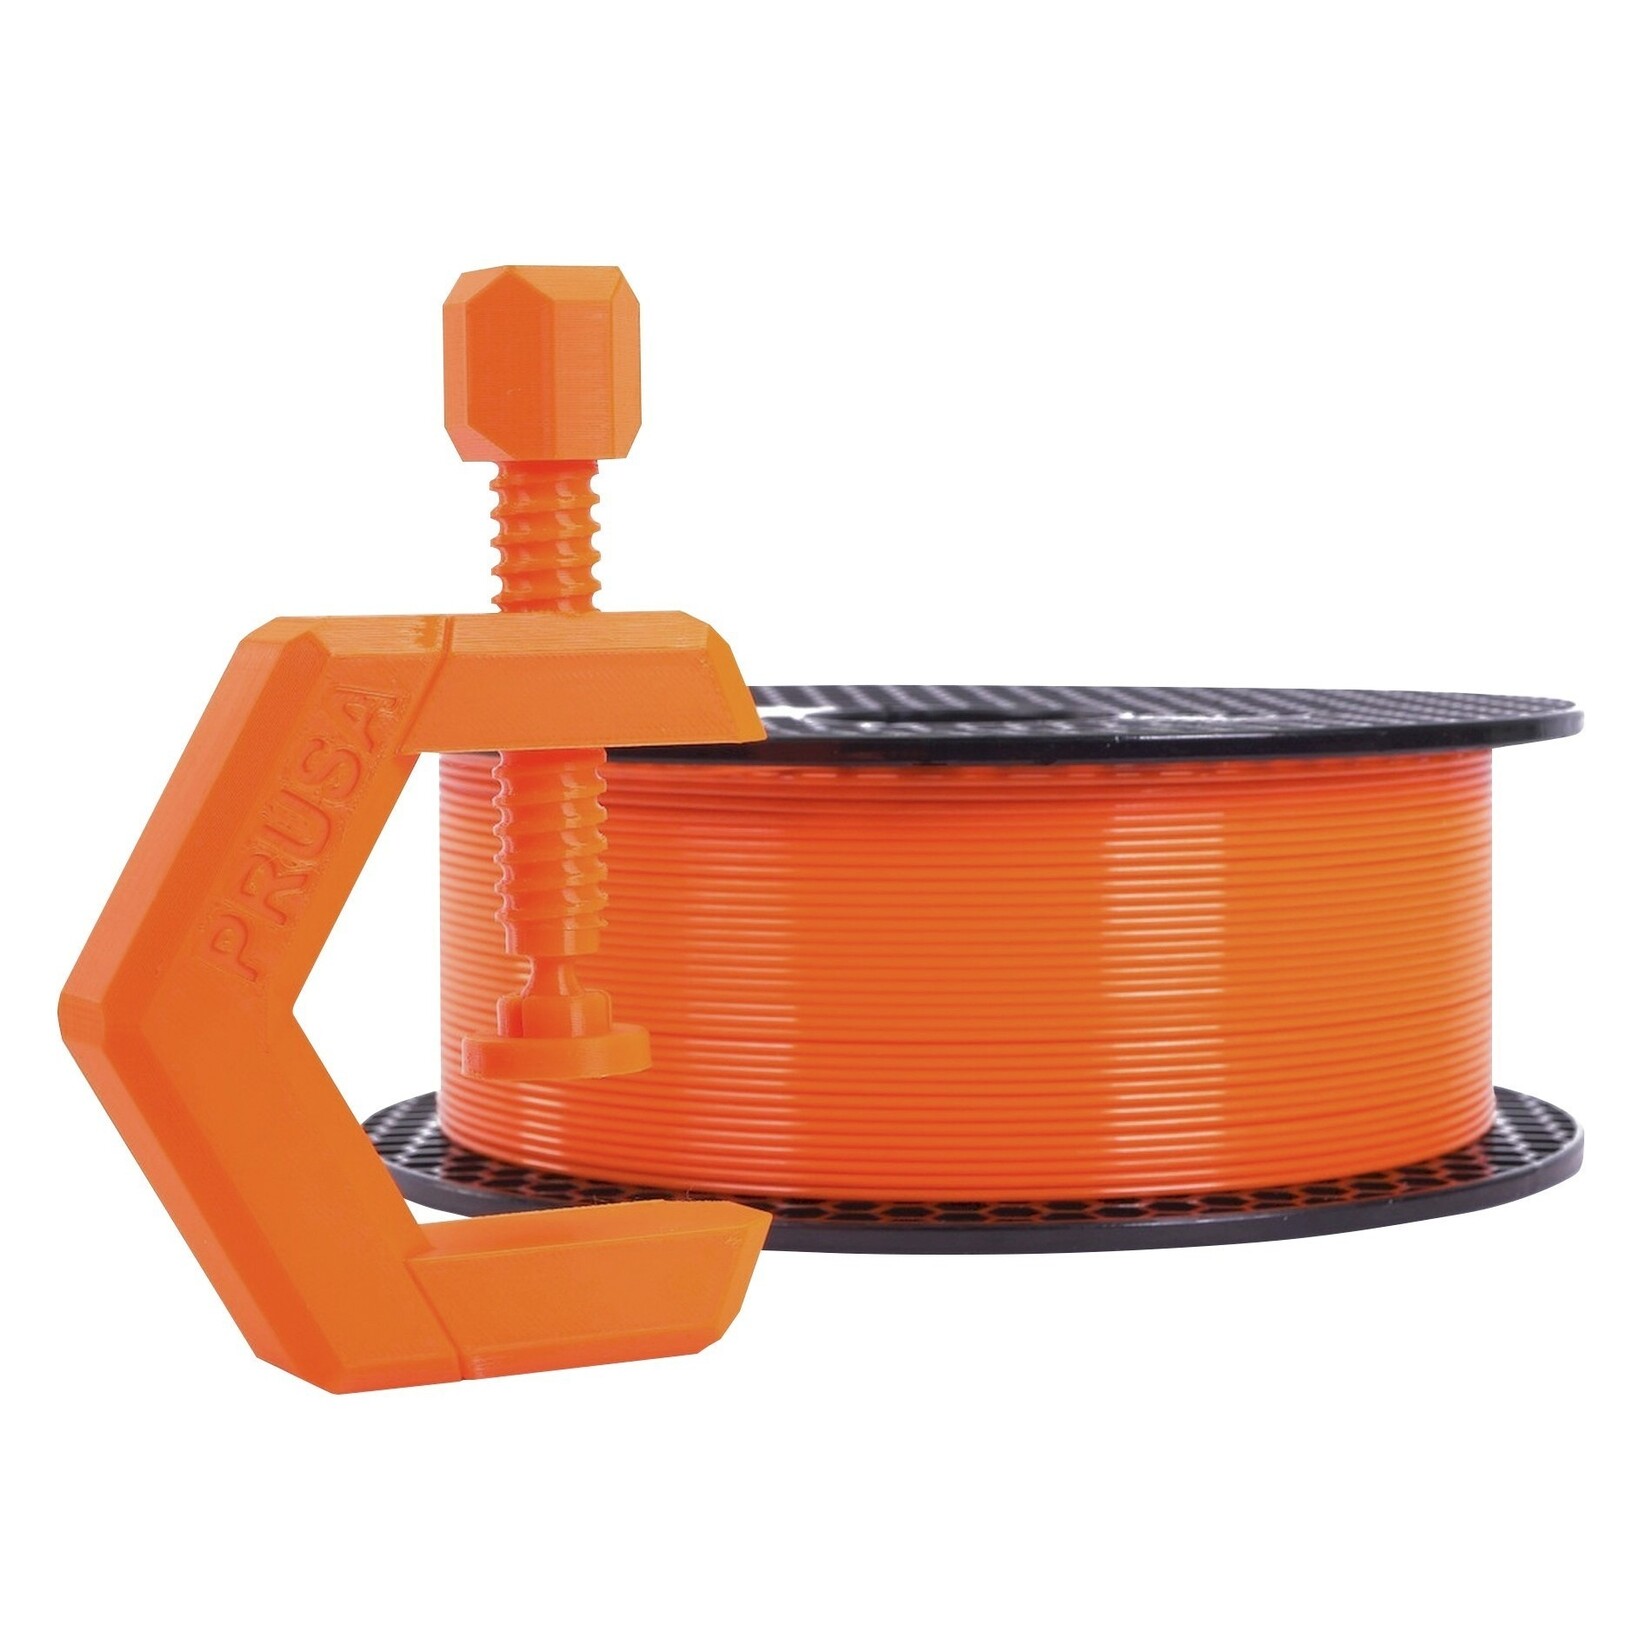 Prusa Research 1.75mm PETG 3d printer filament Prusament prusa orange 1kg